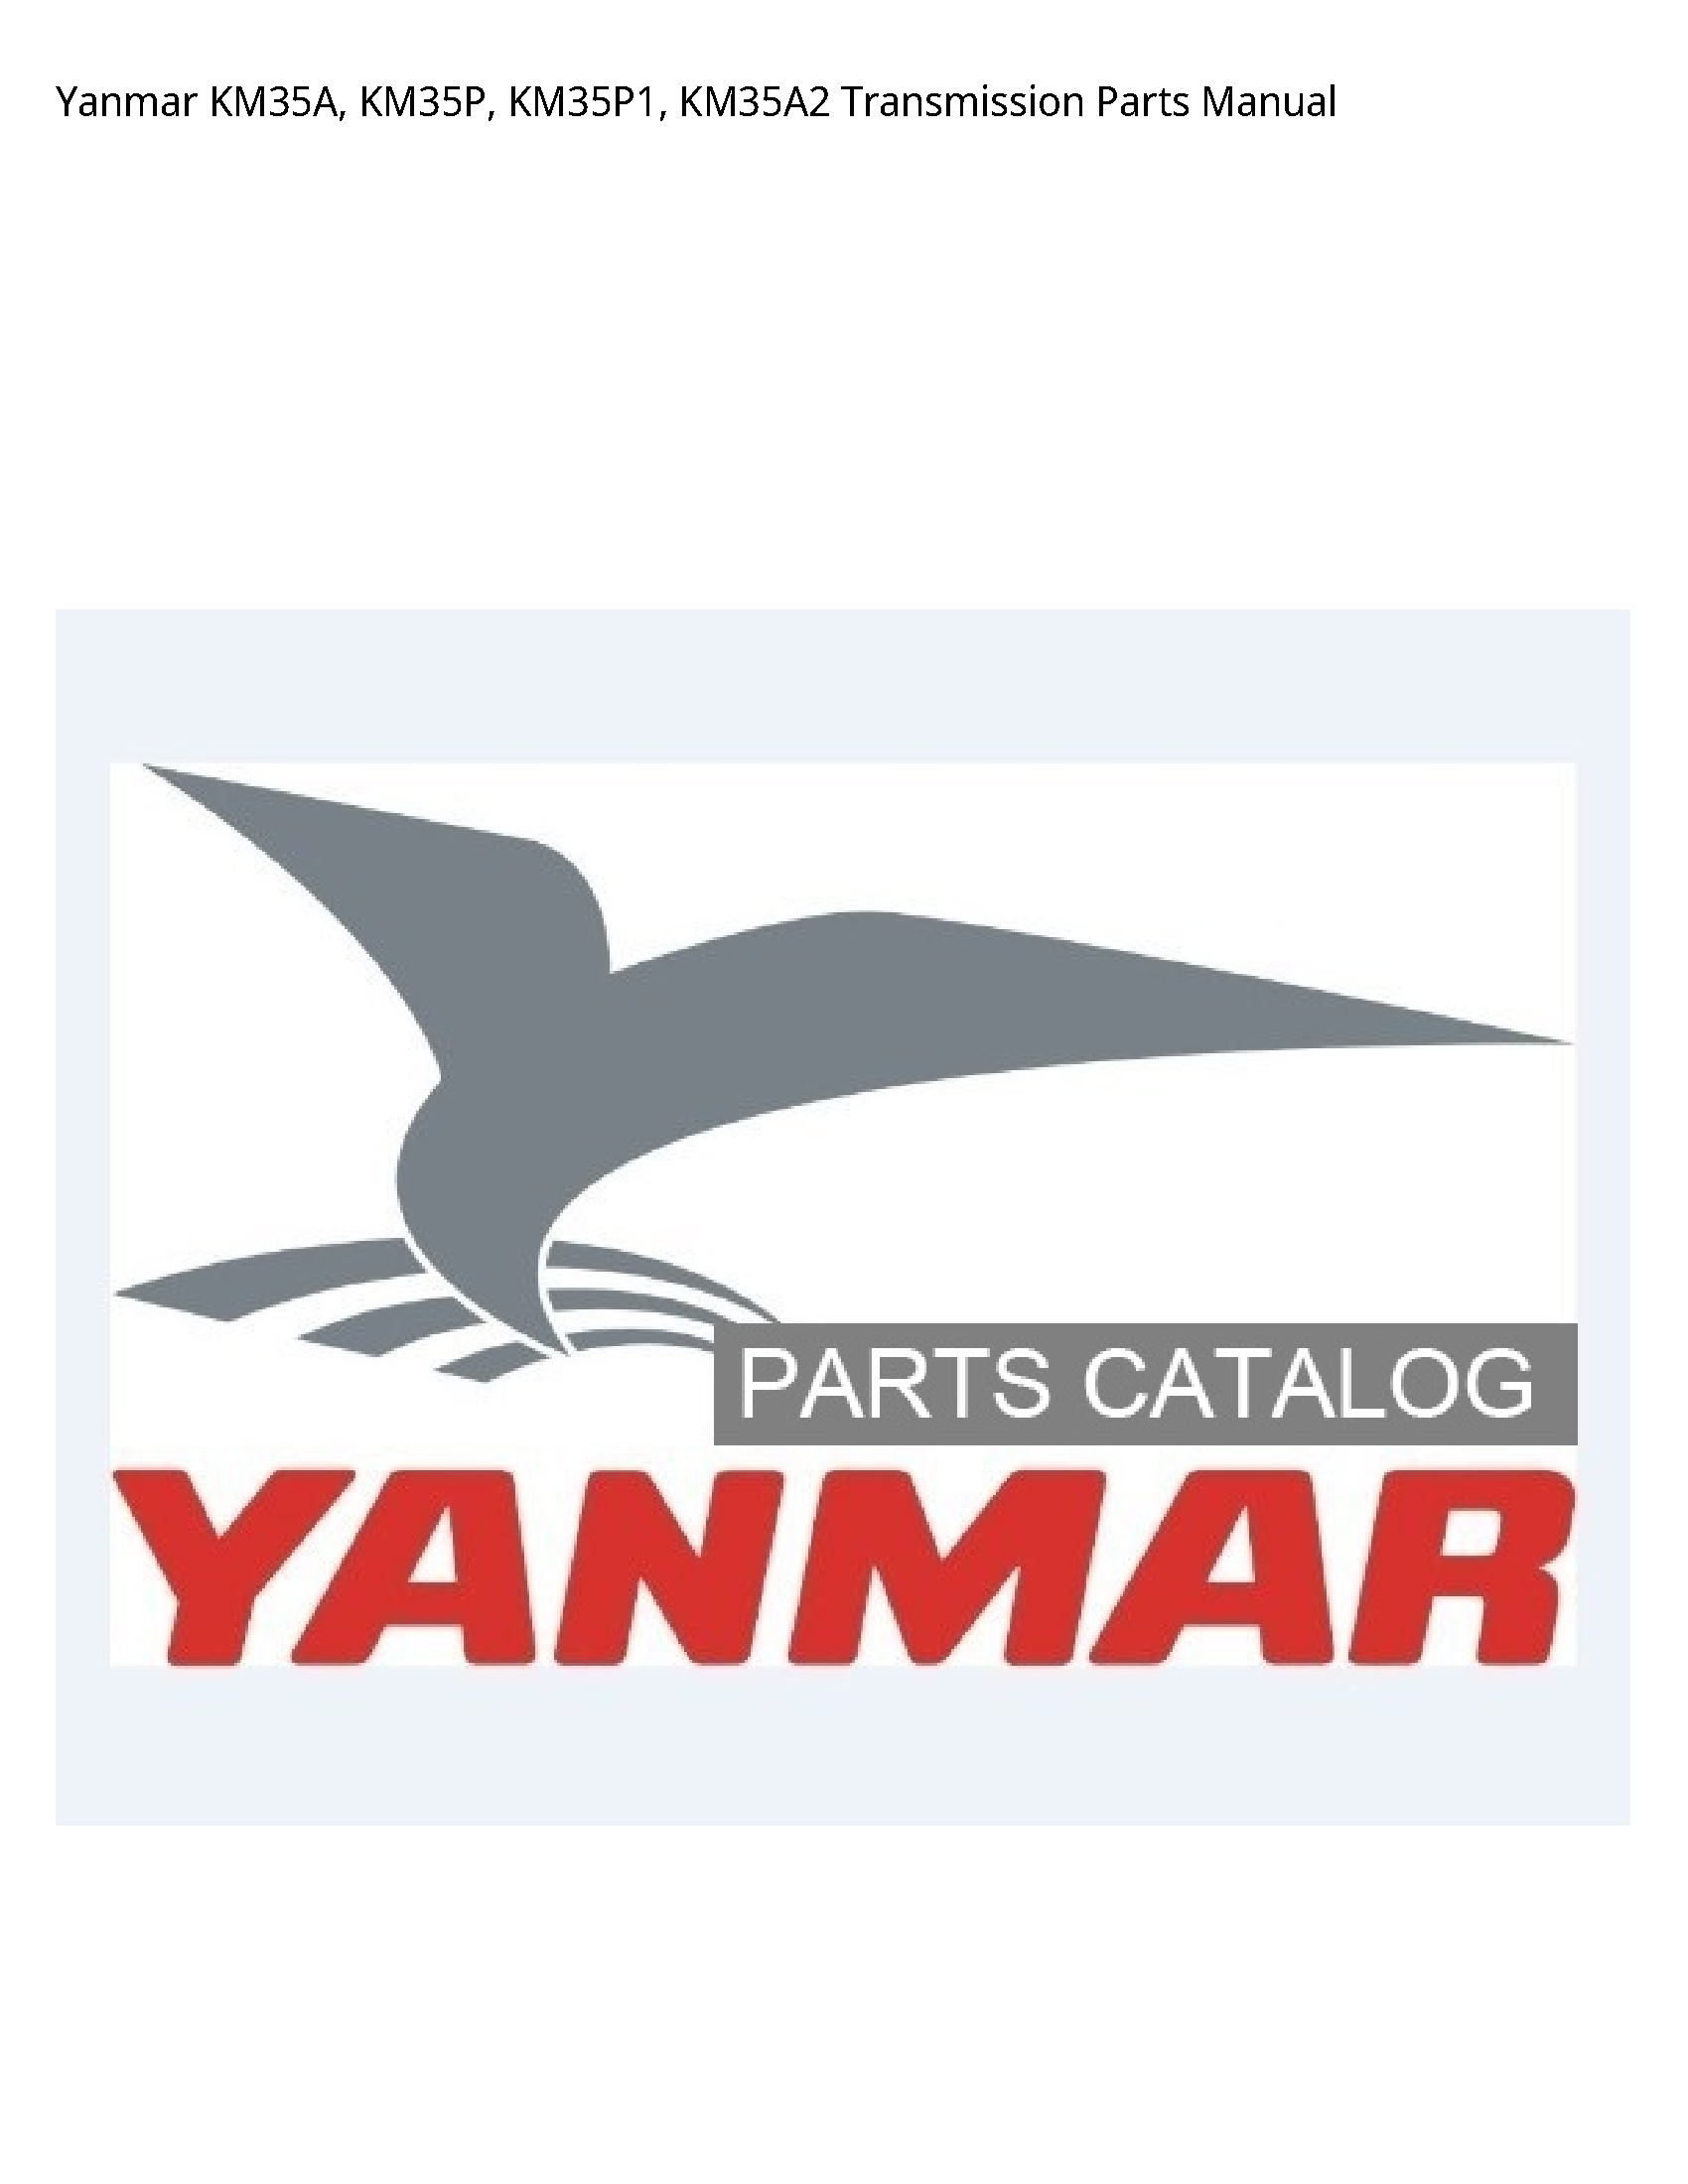 Yanmar KM35A Transmission Parts manual